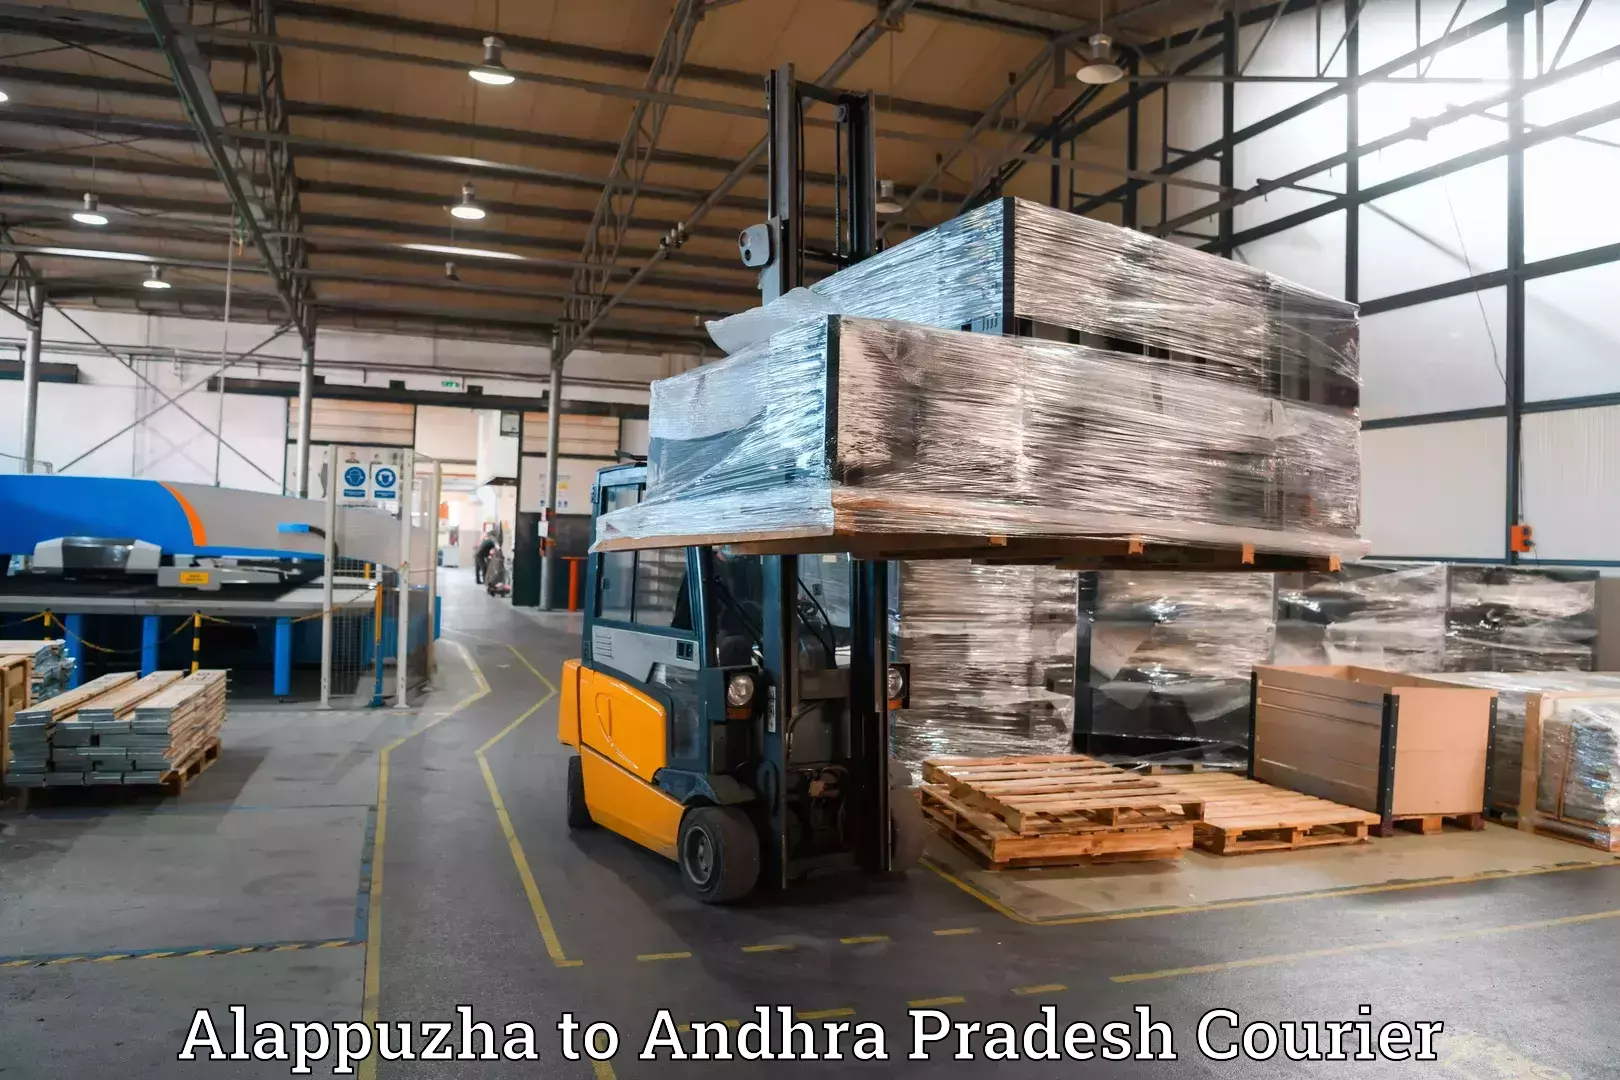 Baggage transport scheduler Alappuzha to Andhra Pradesh